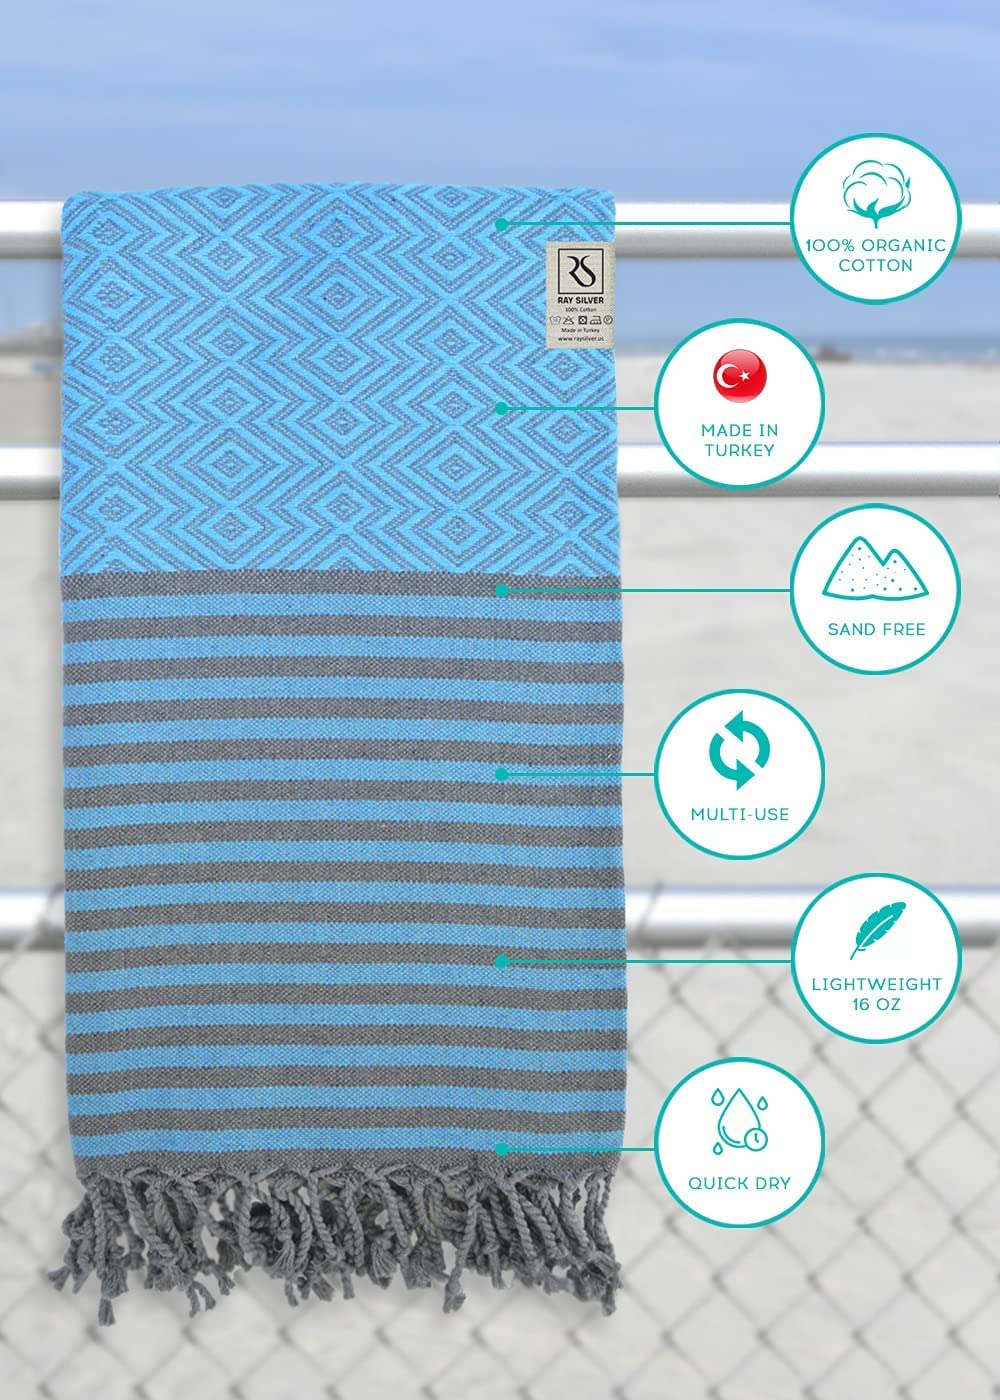 【美國代購】Ray Silver 優質土耳其海灘毛巾 (101.6 x 180.3 公分) 100% 有機棉 土耳其浴巾 快乾 輕量 旅行 SPA 泳池 浴室 海灘(藍色/灰色)